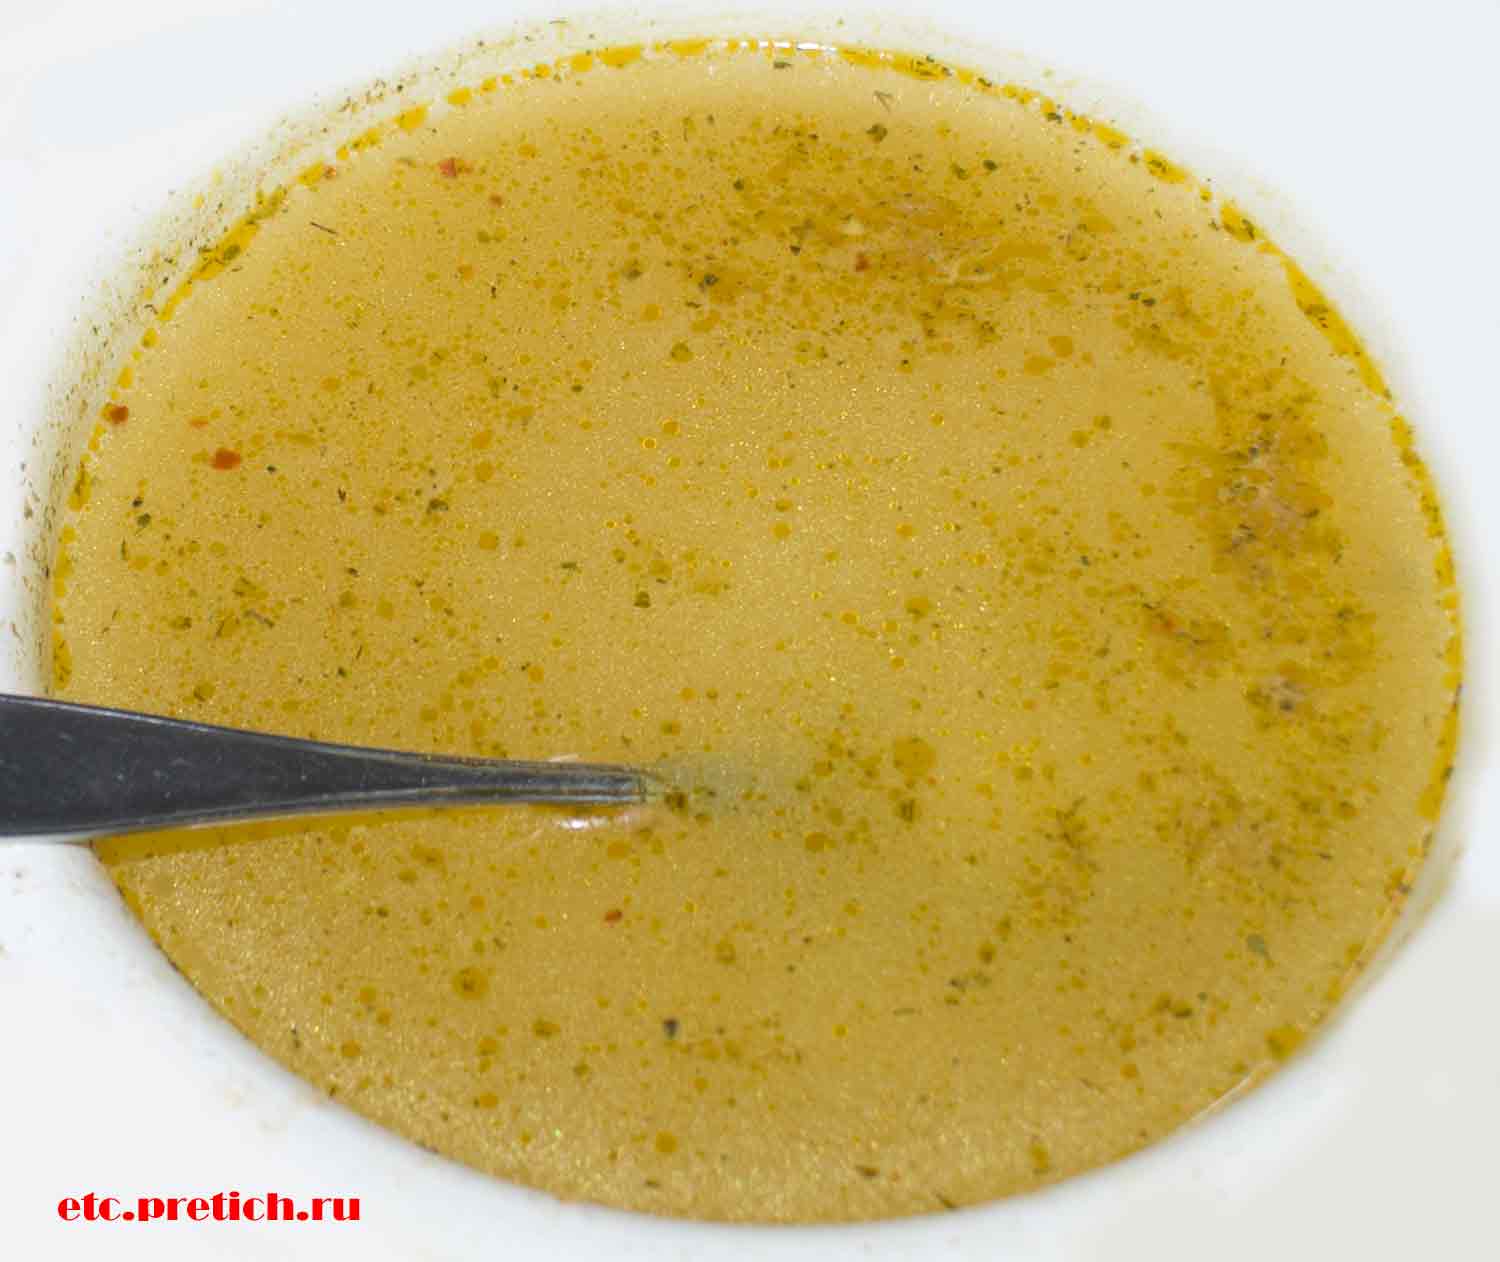 Овощной суп со звездочками Podravka это ведь несъедобно! Невкусно!